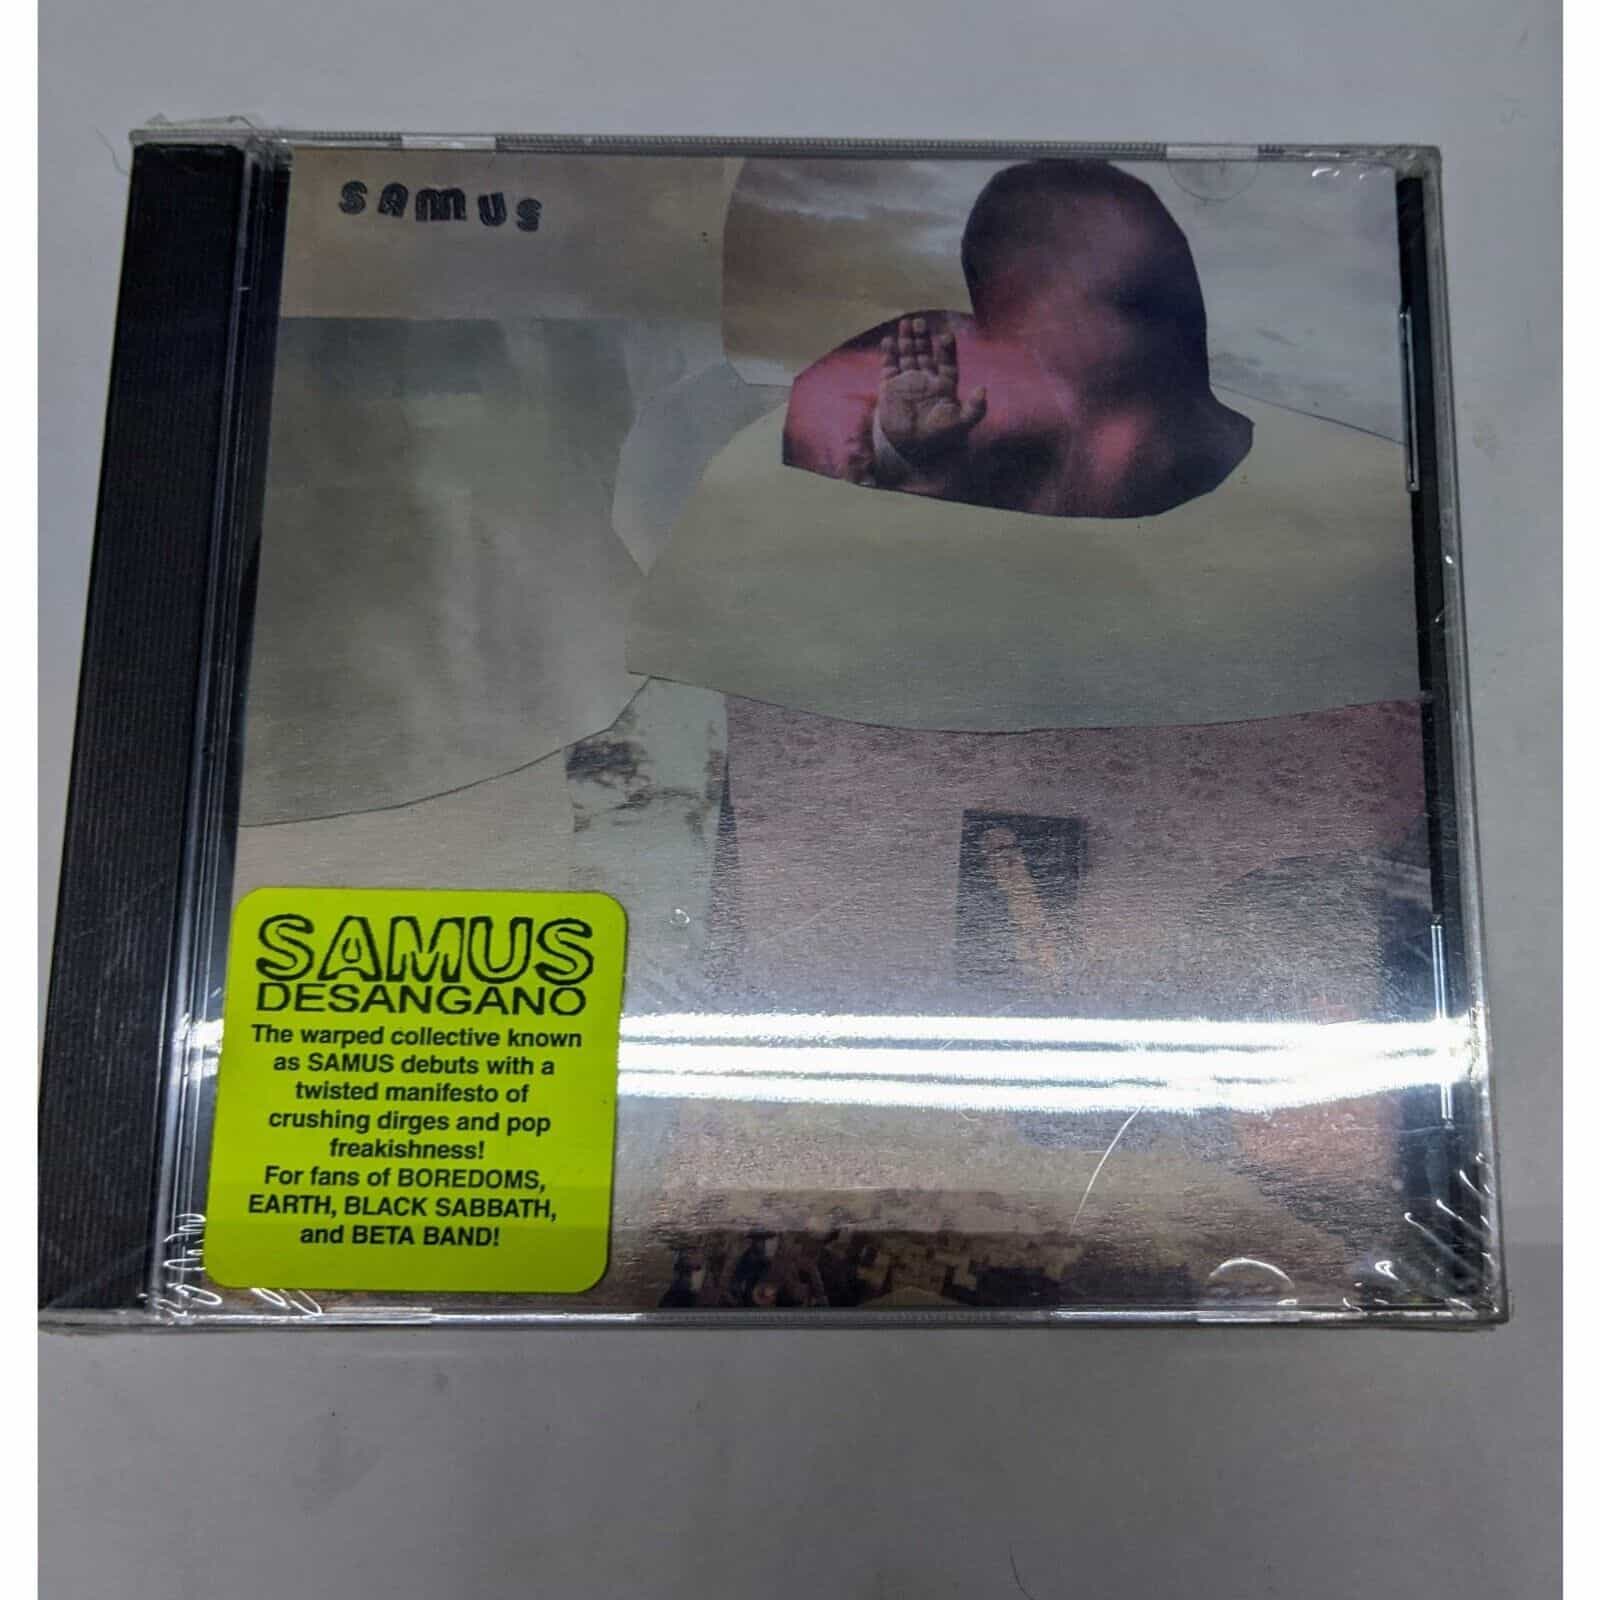 Samus by Desangano Music Album